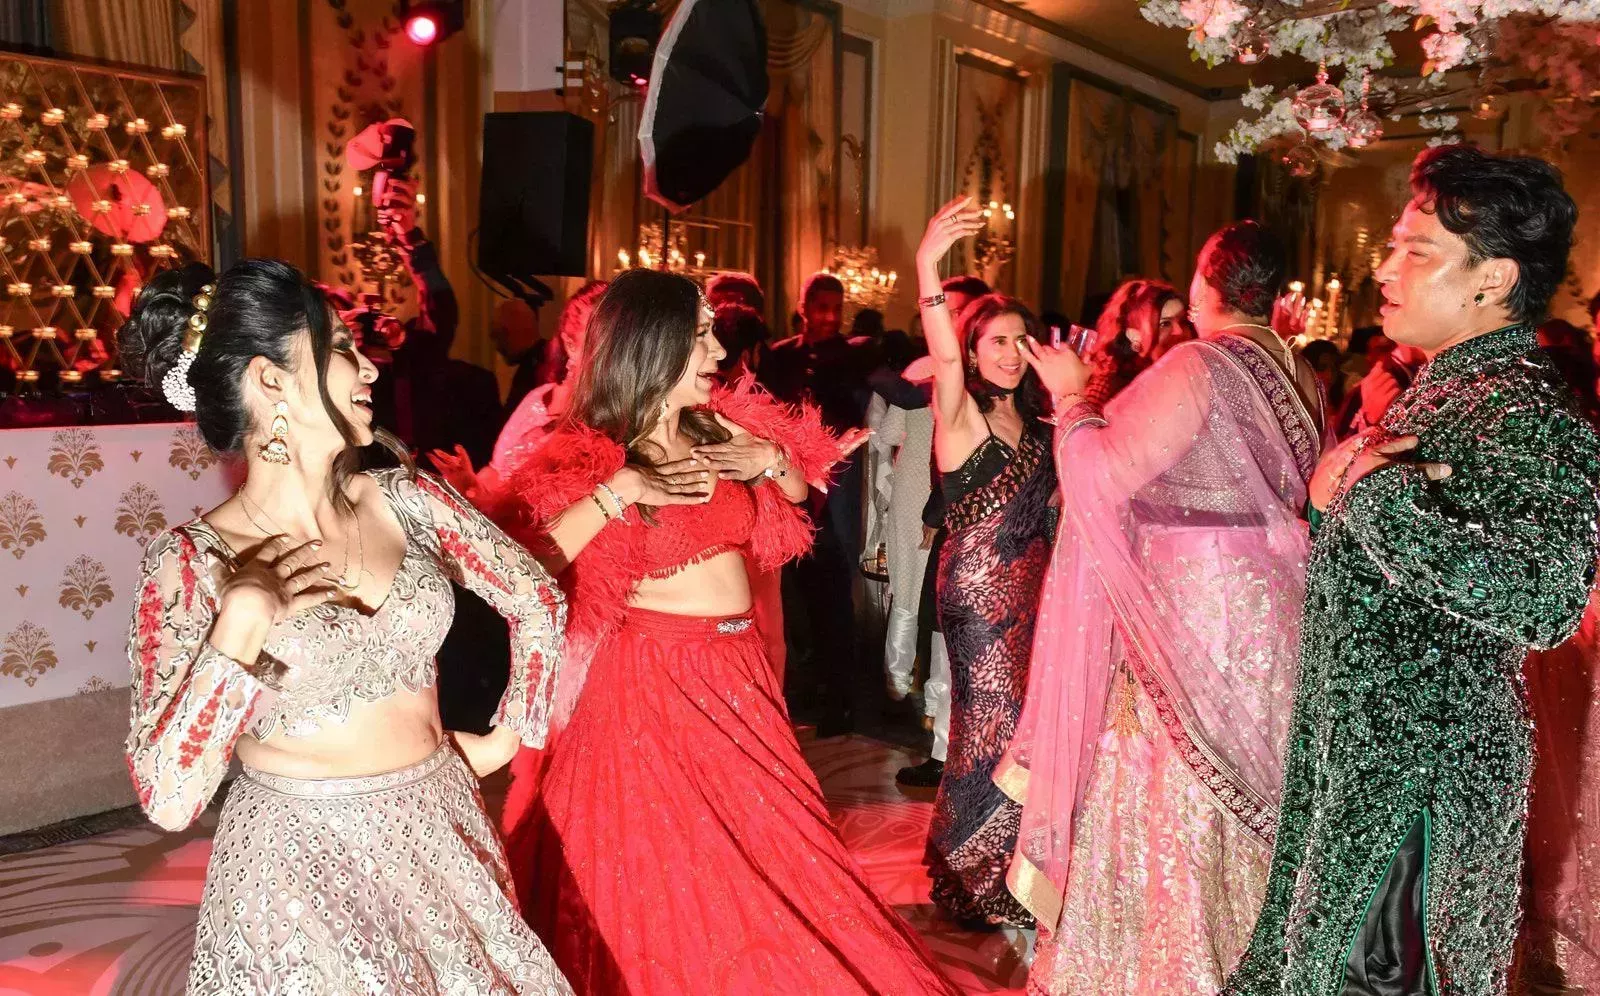 Una noche en el All That Glitters Diwali Ball de Nueva York